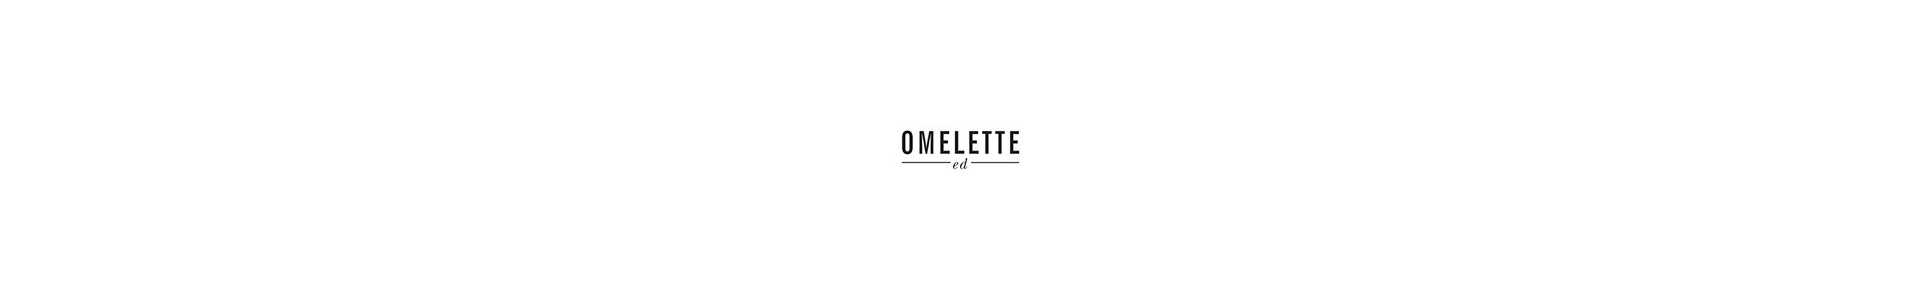 Complementos hogar de la marca Omelette ed. Muebles diseño Muebles Lluesma